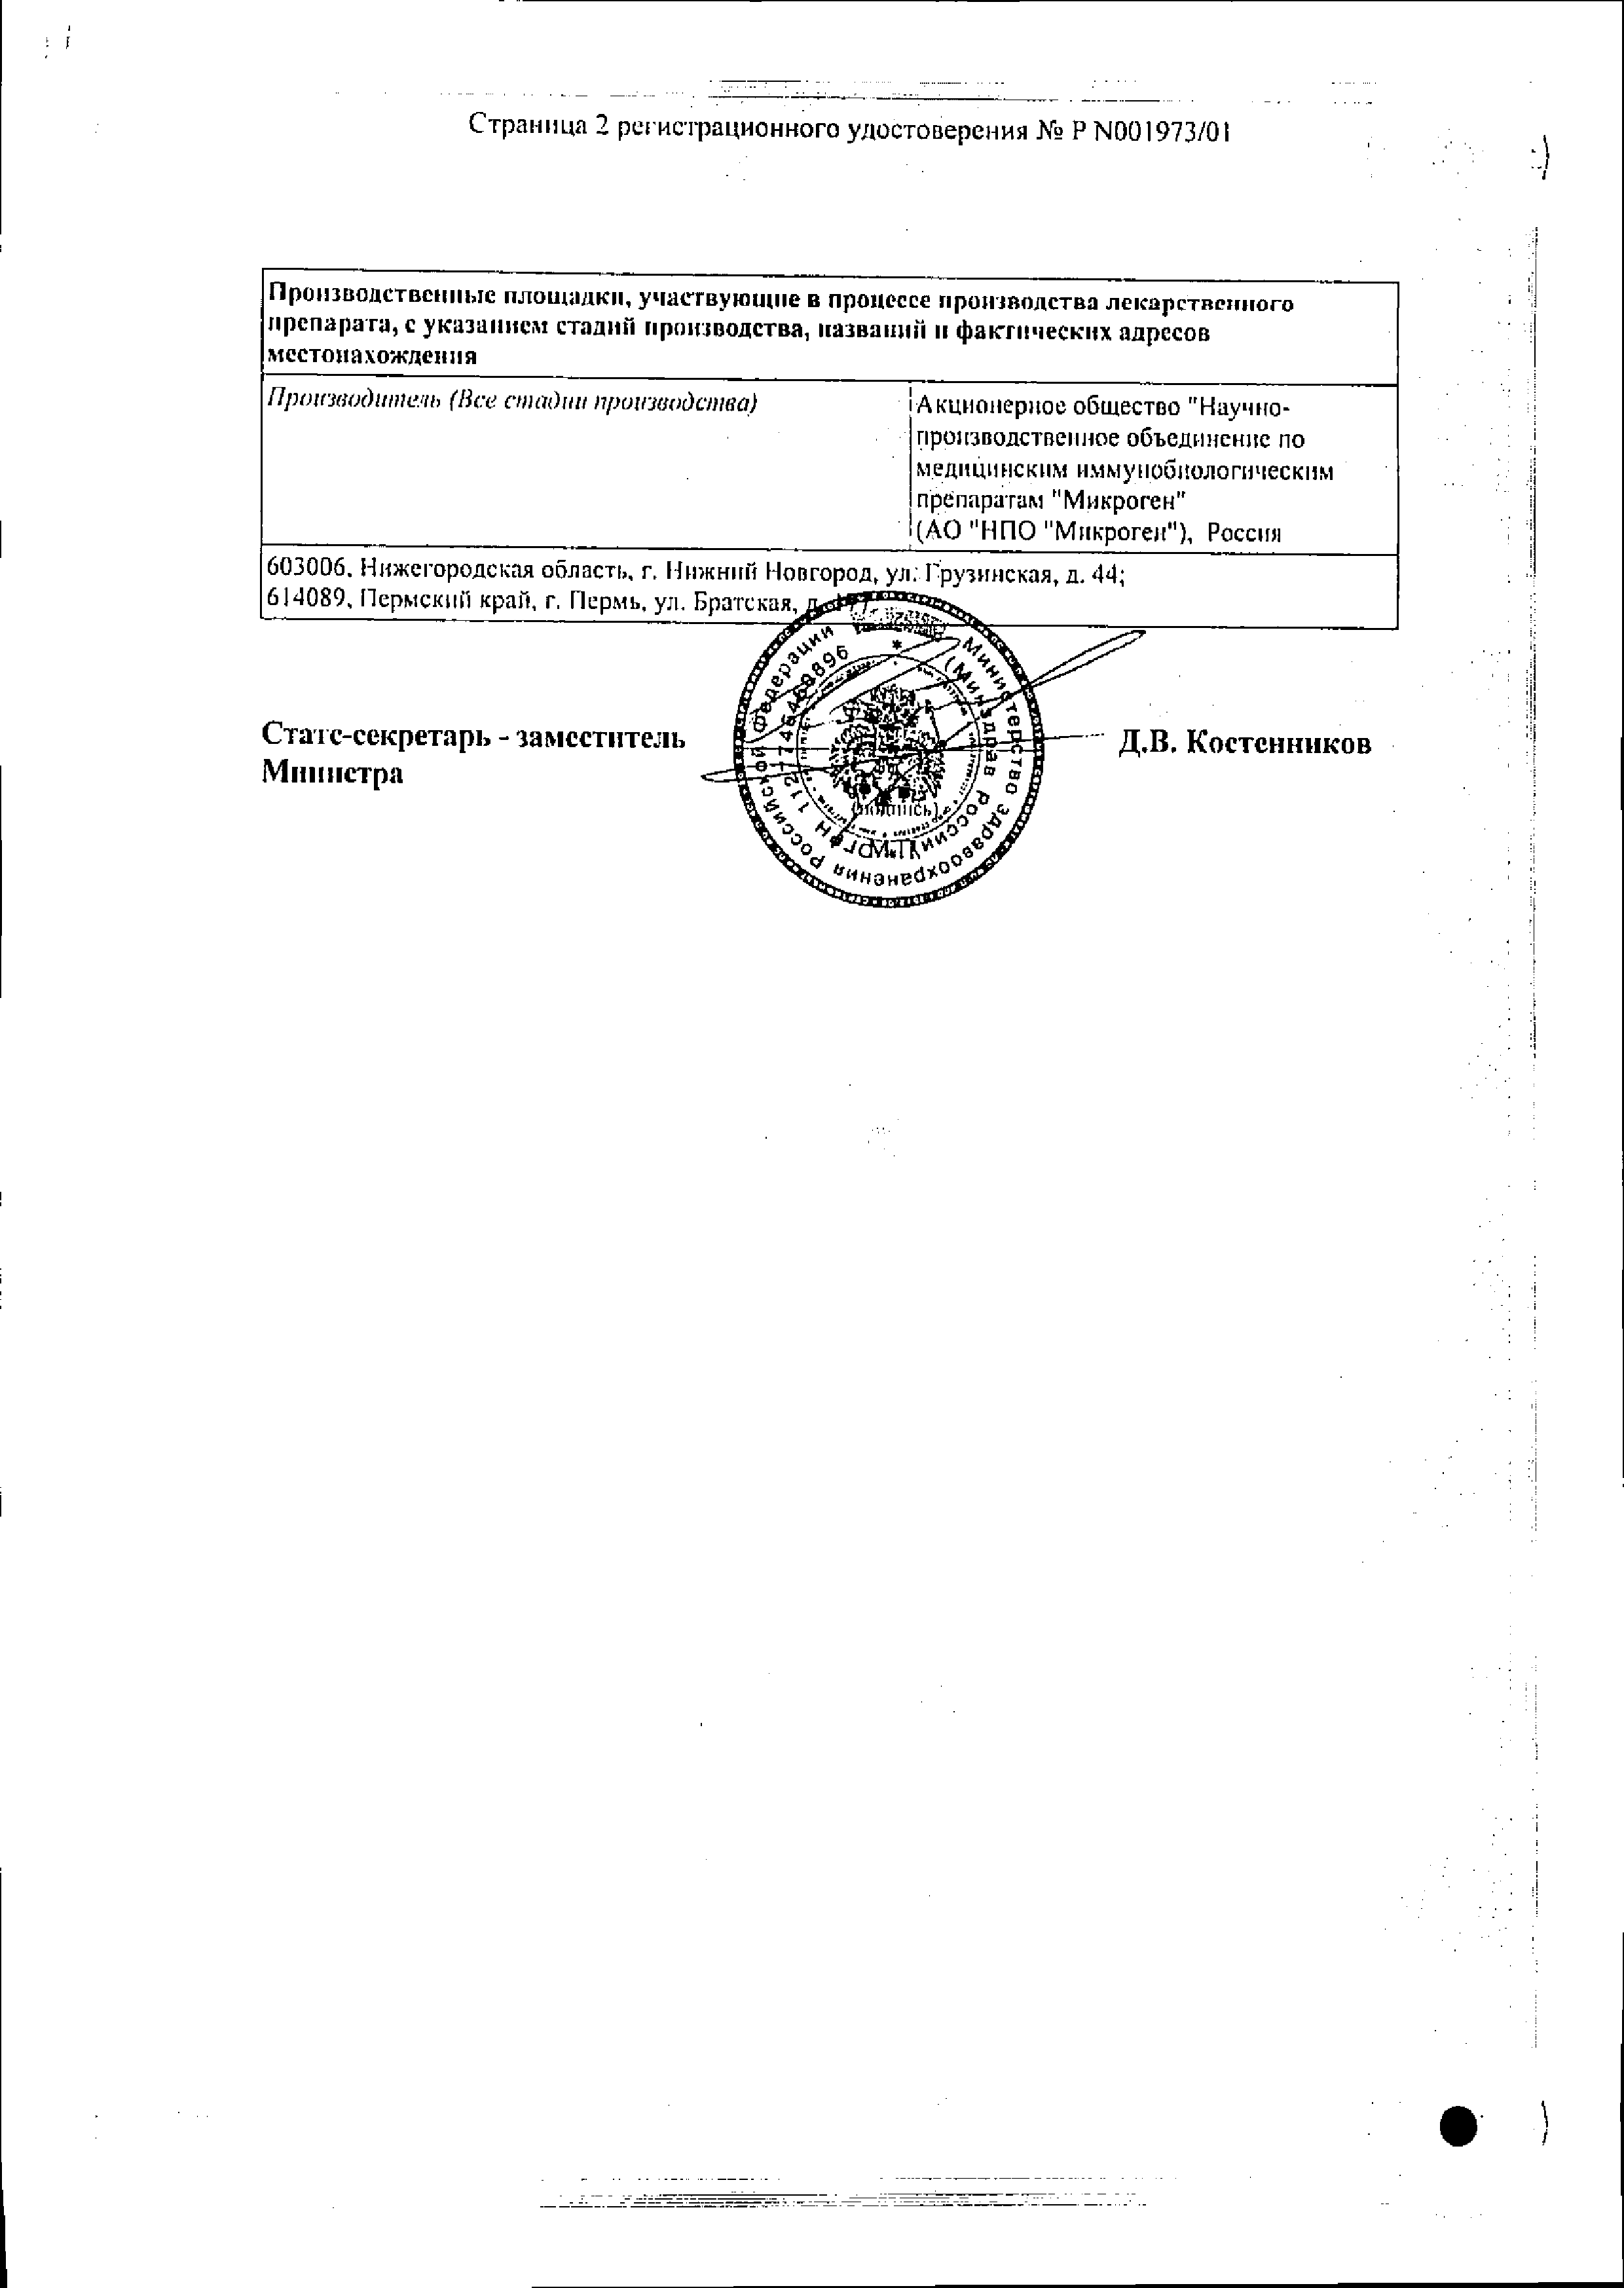 Бактериофаг стафилококковый жидкий сертификат